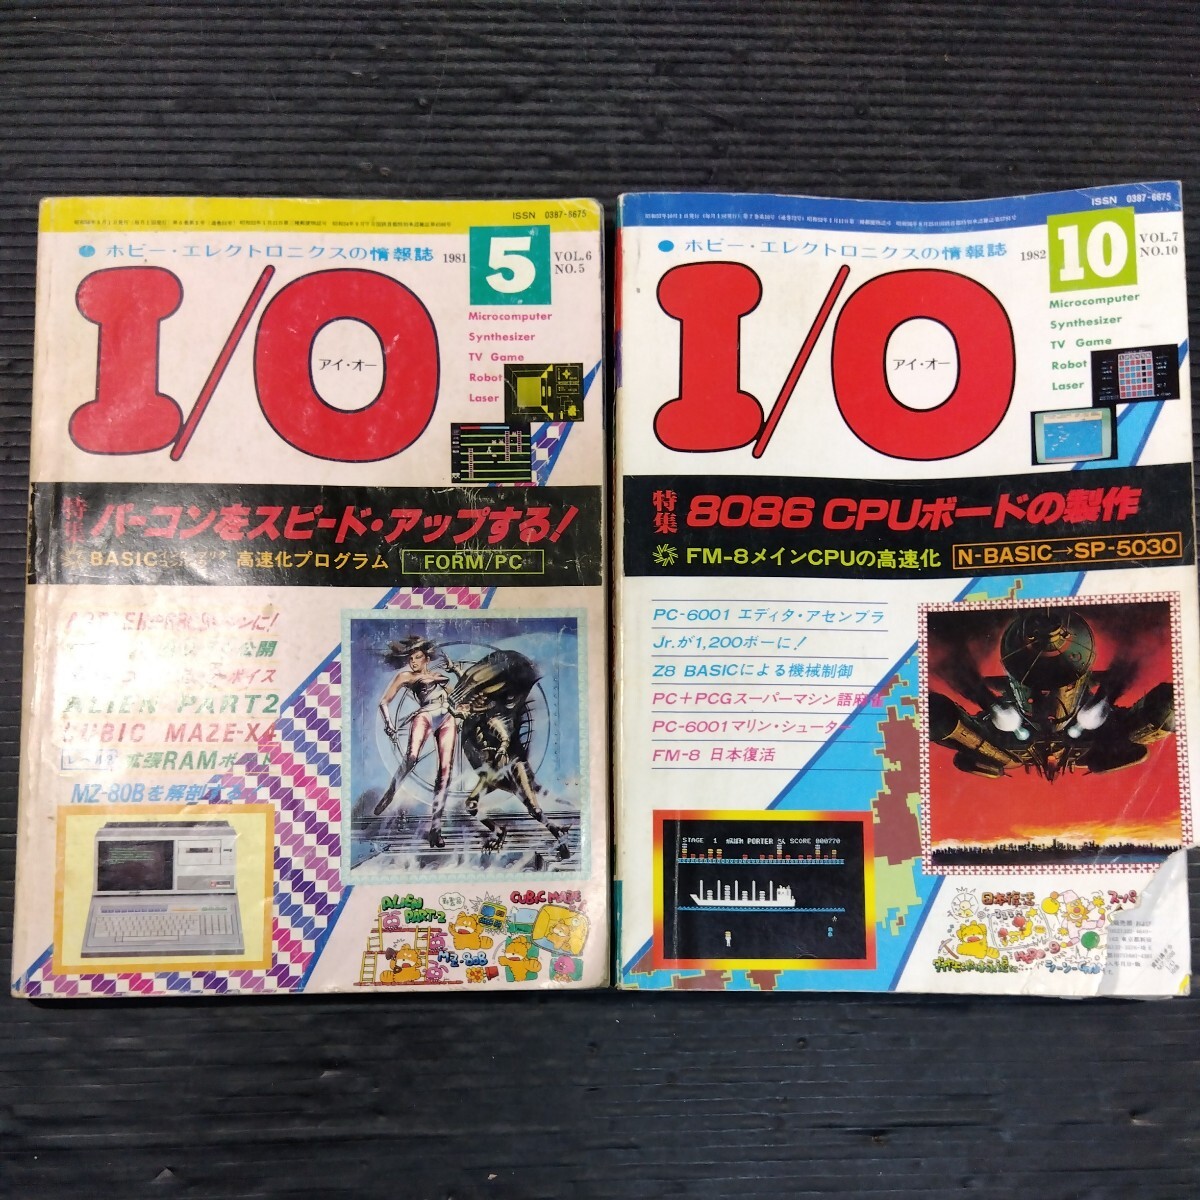 PC雑誌 I/O アイ・オー 2冊セット 1981年5月号 1982年10月号 不揃い 工学社 16ビット マイコン プチコン パーコン パソコンゲームの画像1